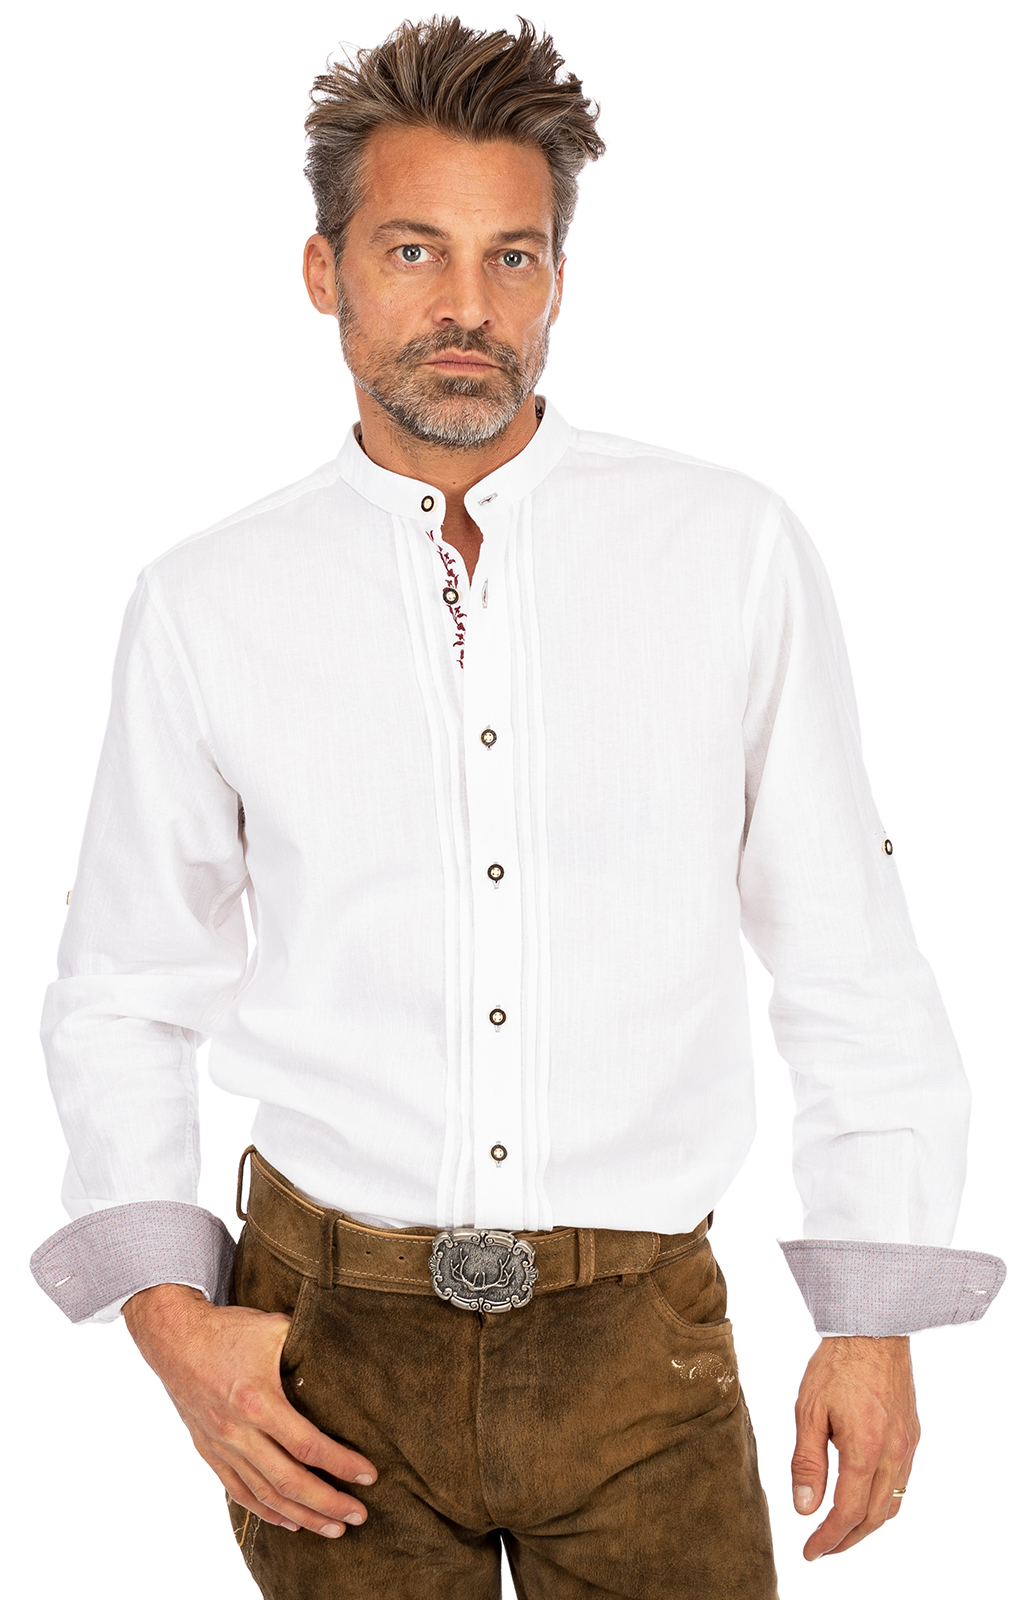 weitere Bilder von German traditional shirt JONAS white bordeaux